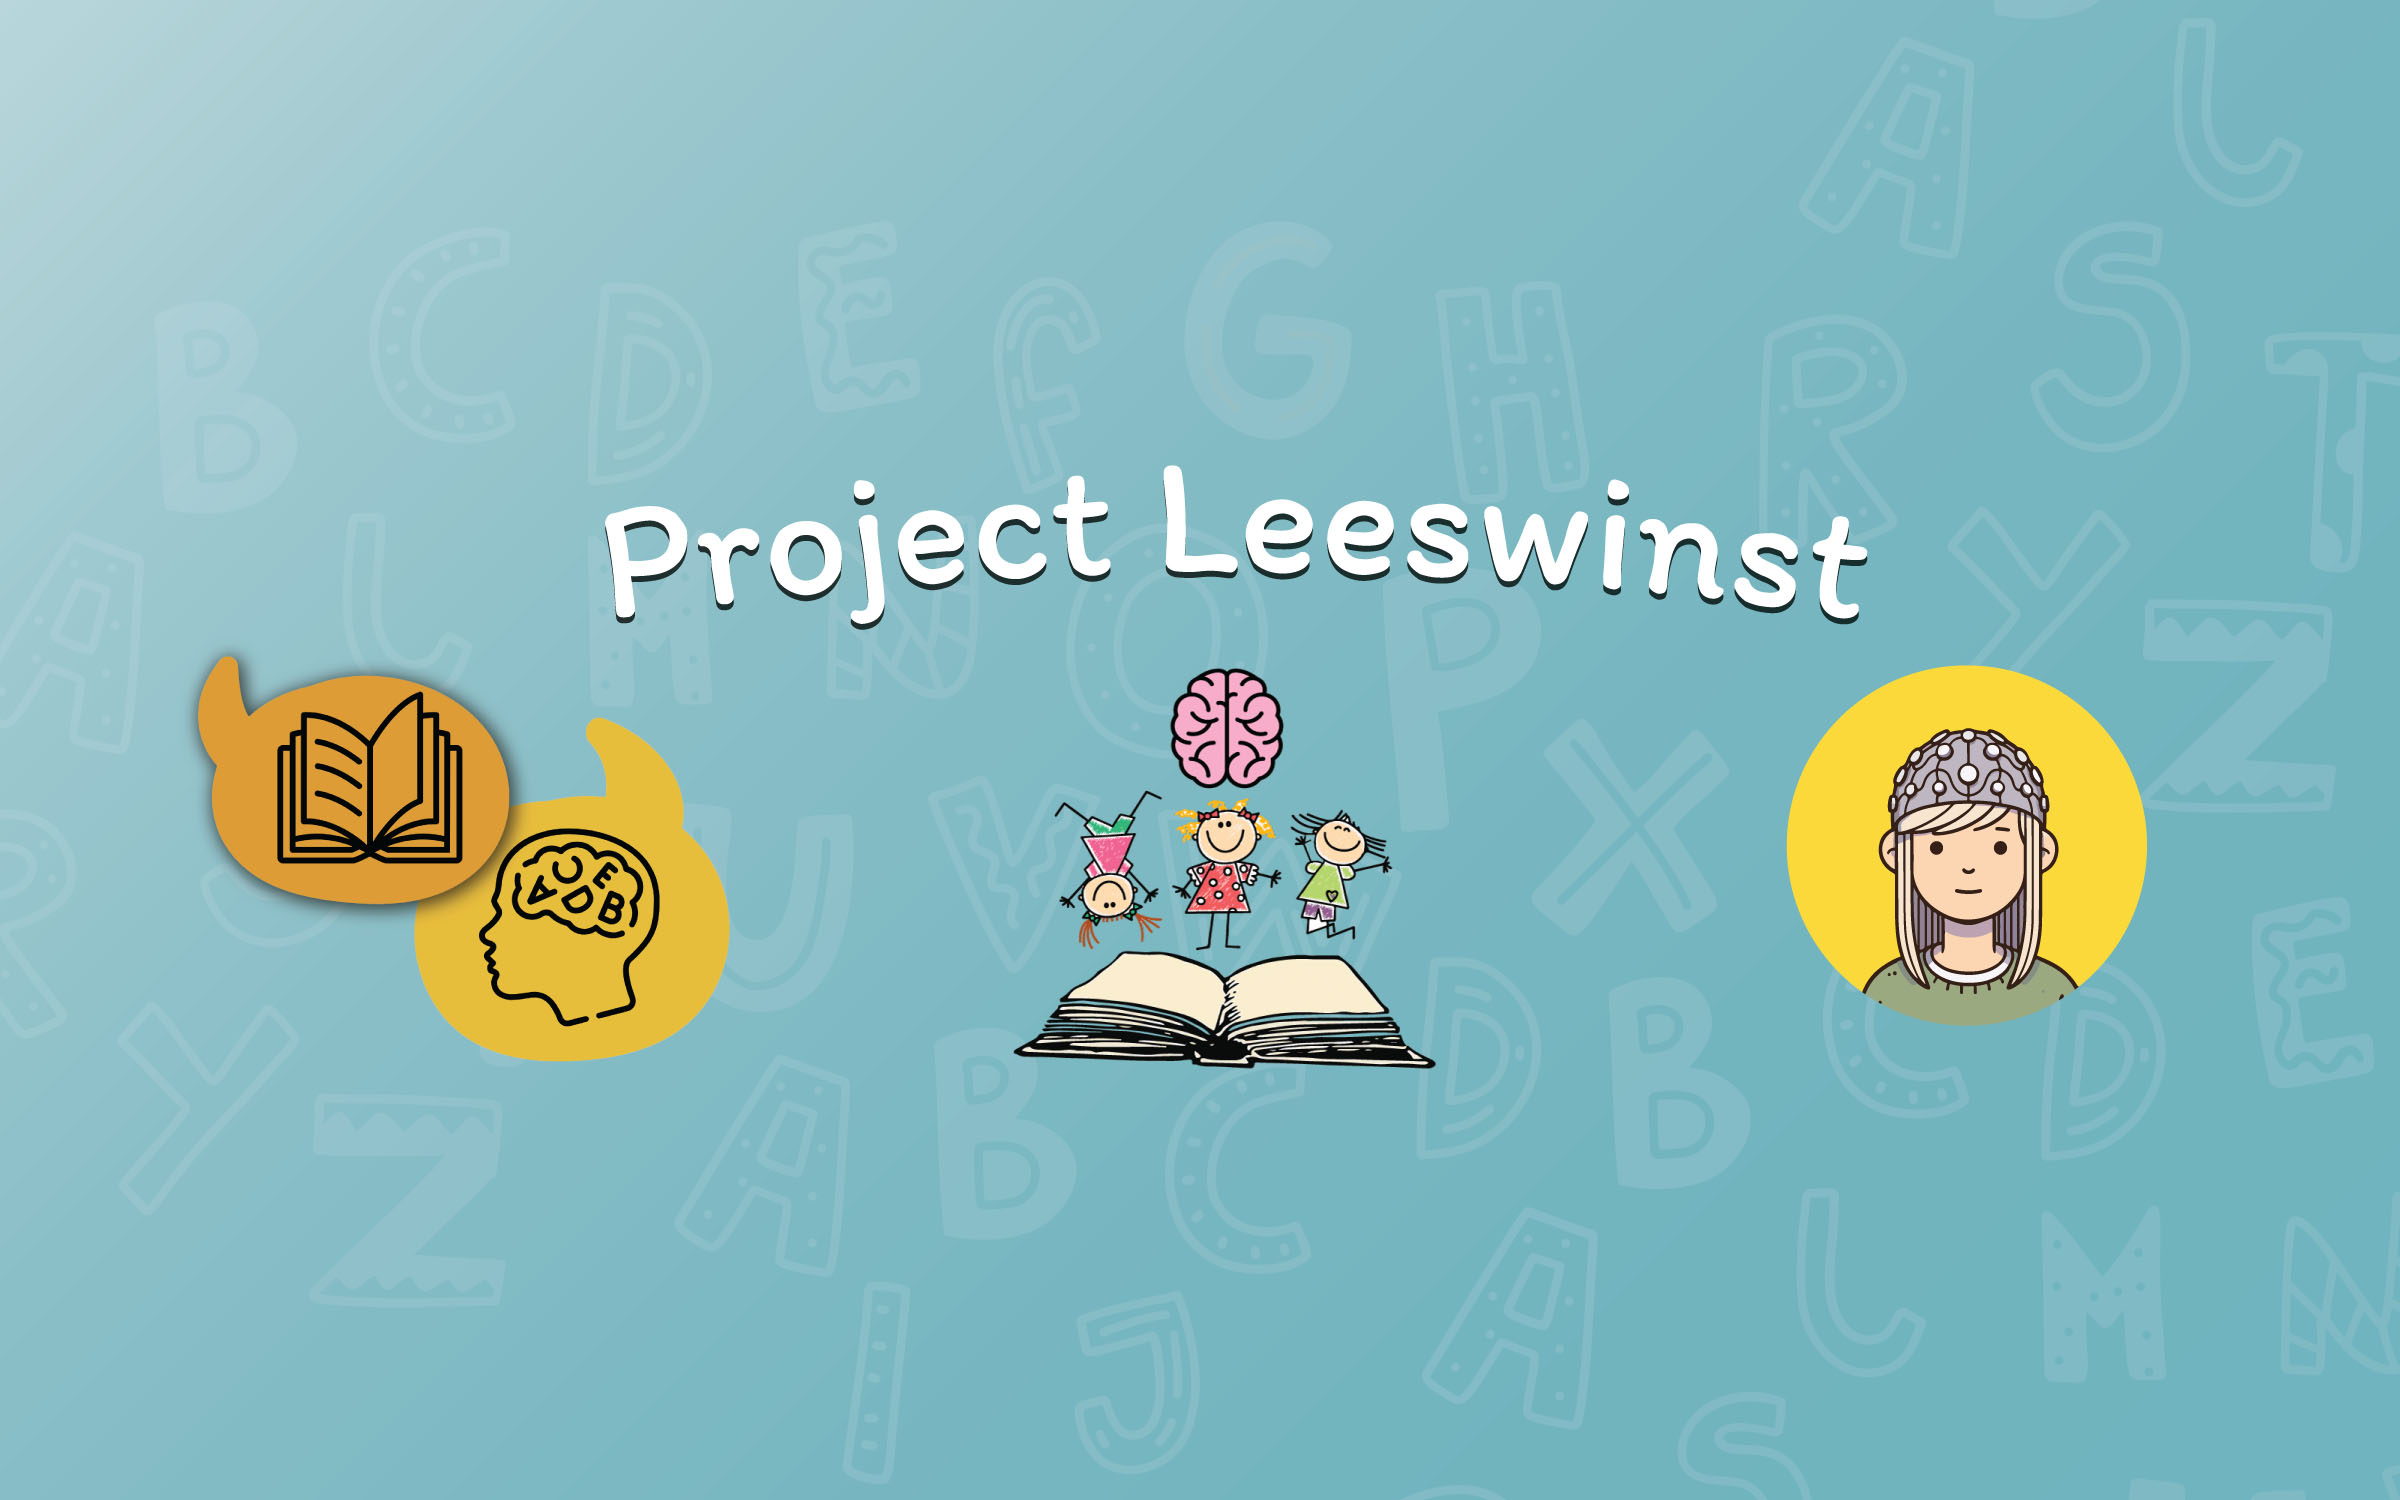 Project Leeswinst, Milene Bonte